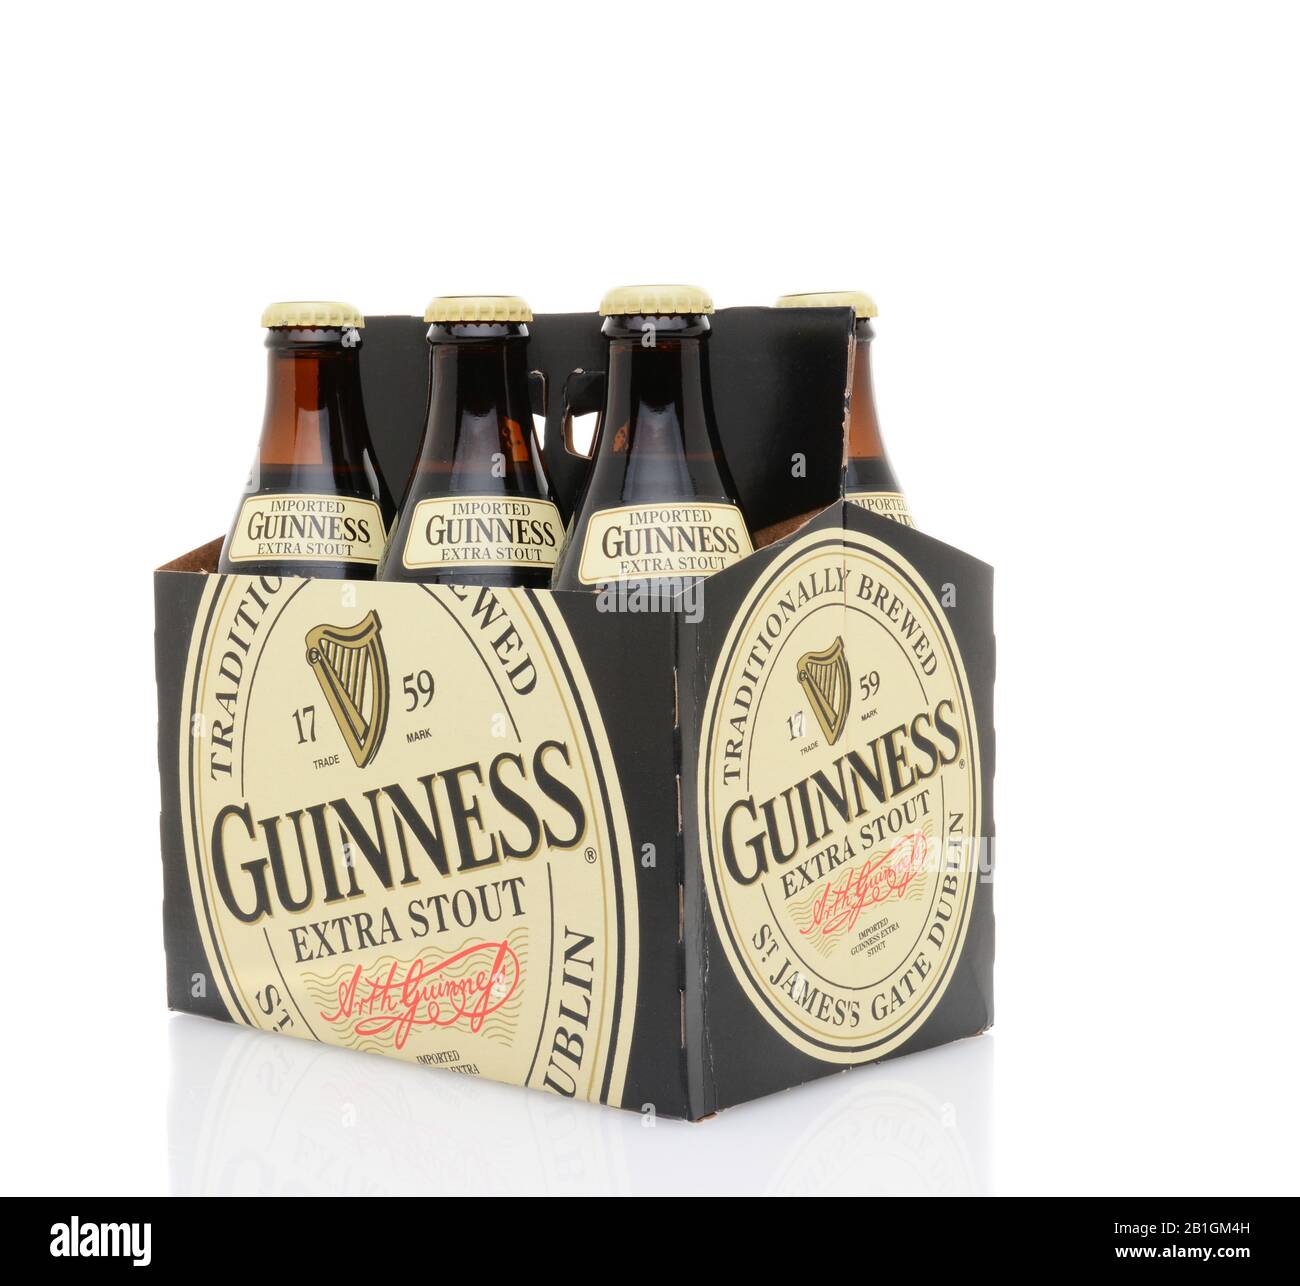 Irvine, California - 25 MAGGIO 2014: Confezione da 6 confezioni di Guinness Extra Stout. Guinness è una delle marche di birra più riuscite al mondo con le vendite annuali oltre 850 mulino Foto Stock